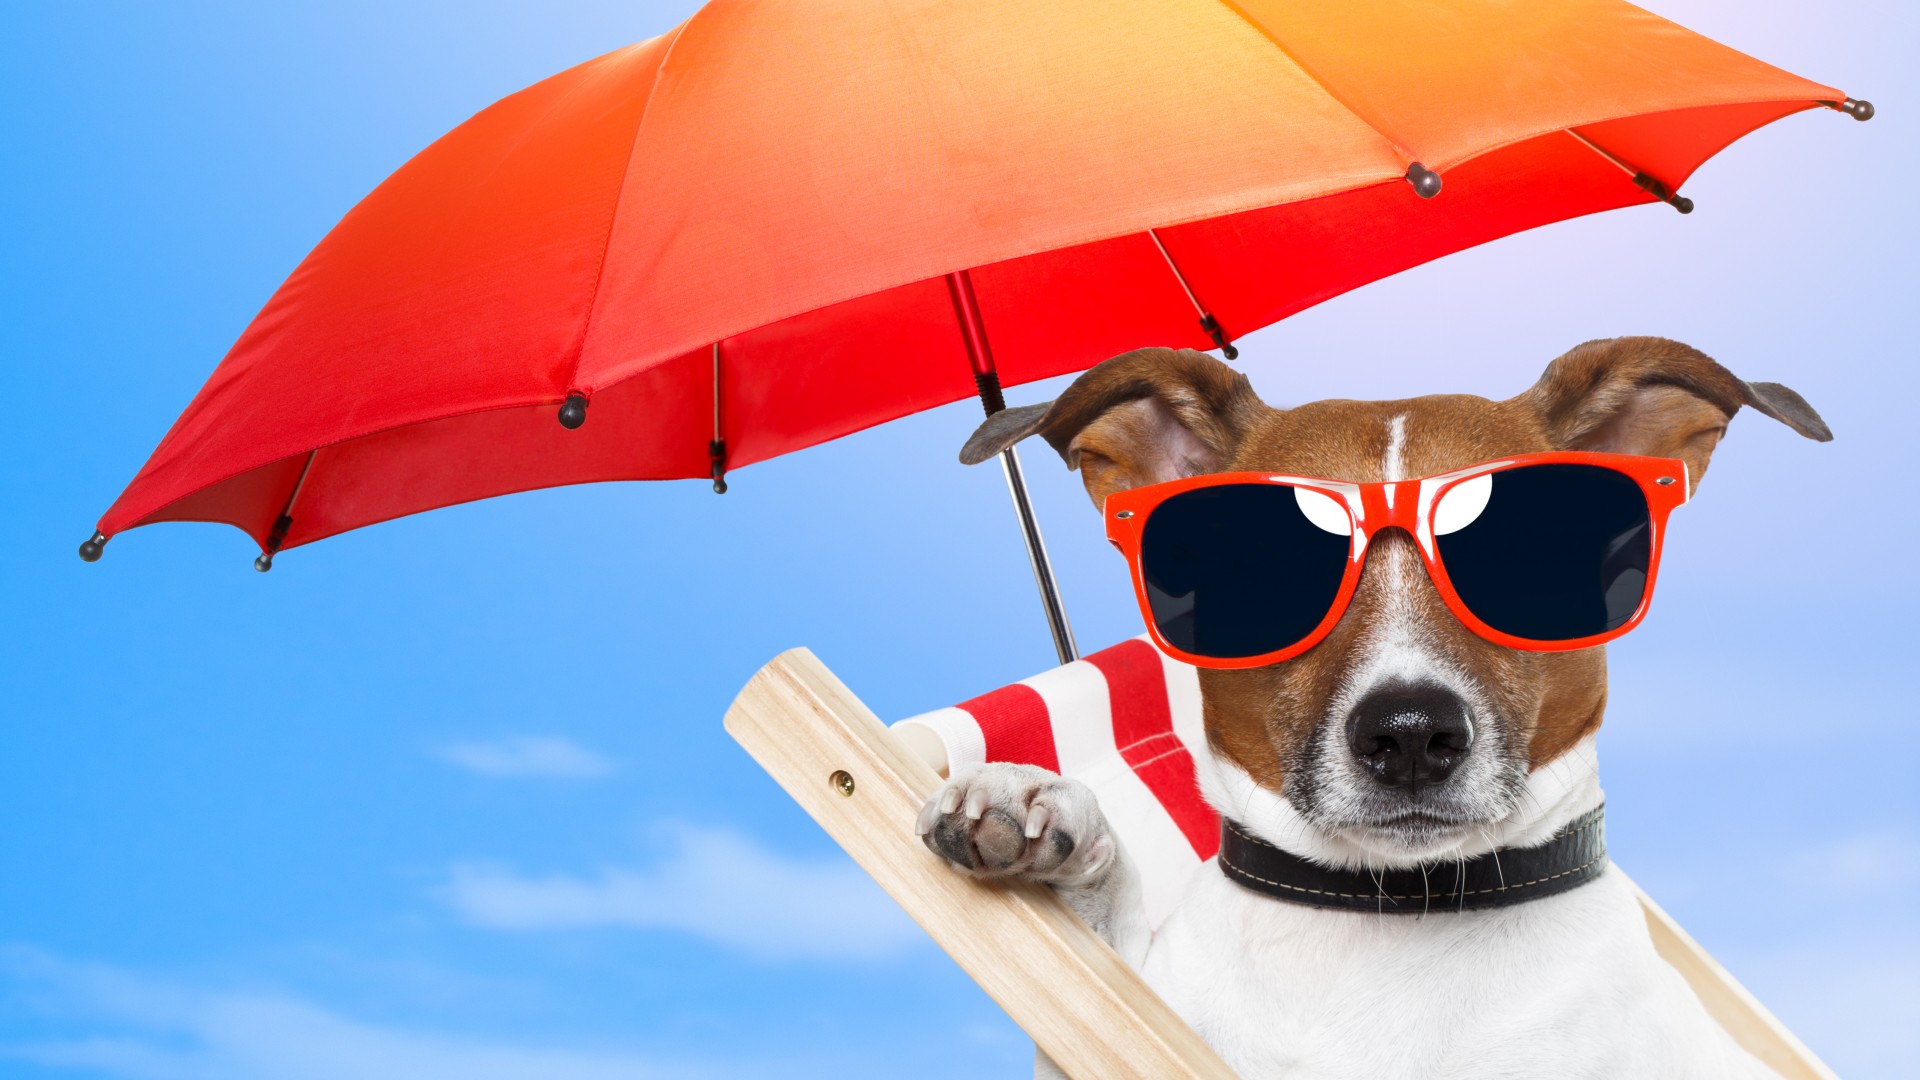 собака, 5k, 4k, 8k, щенок, солнце, лето, пляж, очки, зонтик, отдых, животное, питомец, небо, Dog, 5k, 4k wallpaper, 8k, puppy, sun, summer, beach, sunglasses, umbrella, vacation, animal, pet, sky (horizontal)